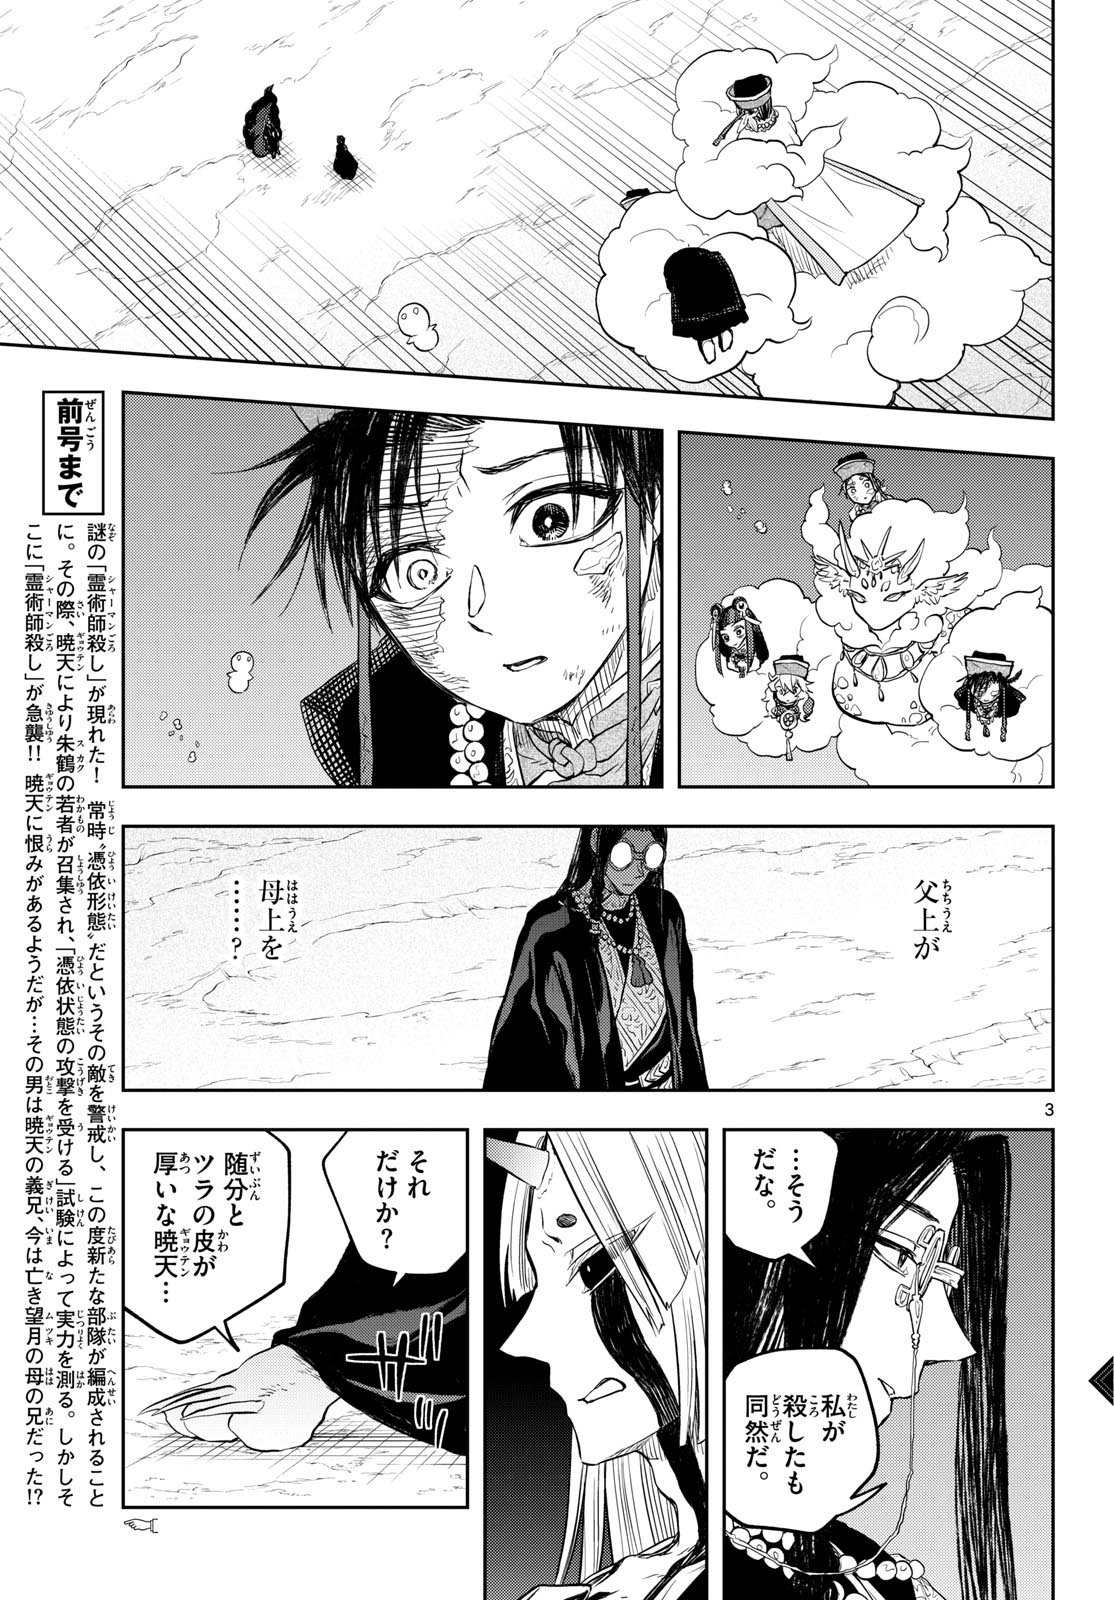 Akatsuki Jihen - Chapter 38 - Page 3